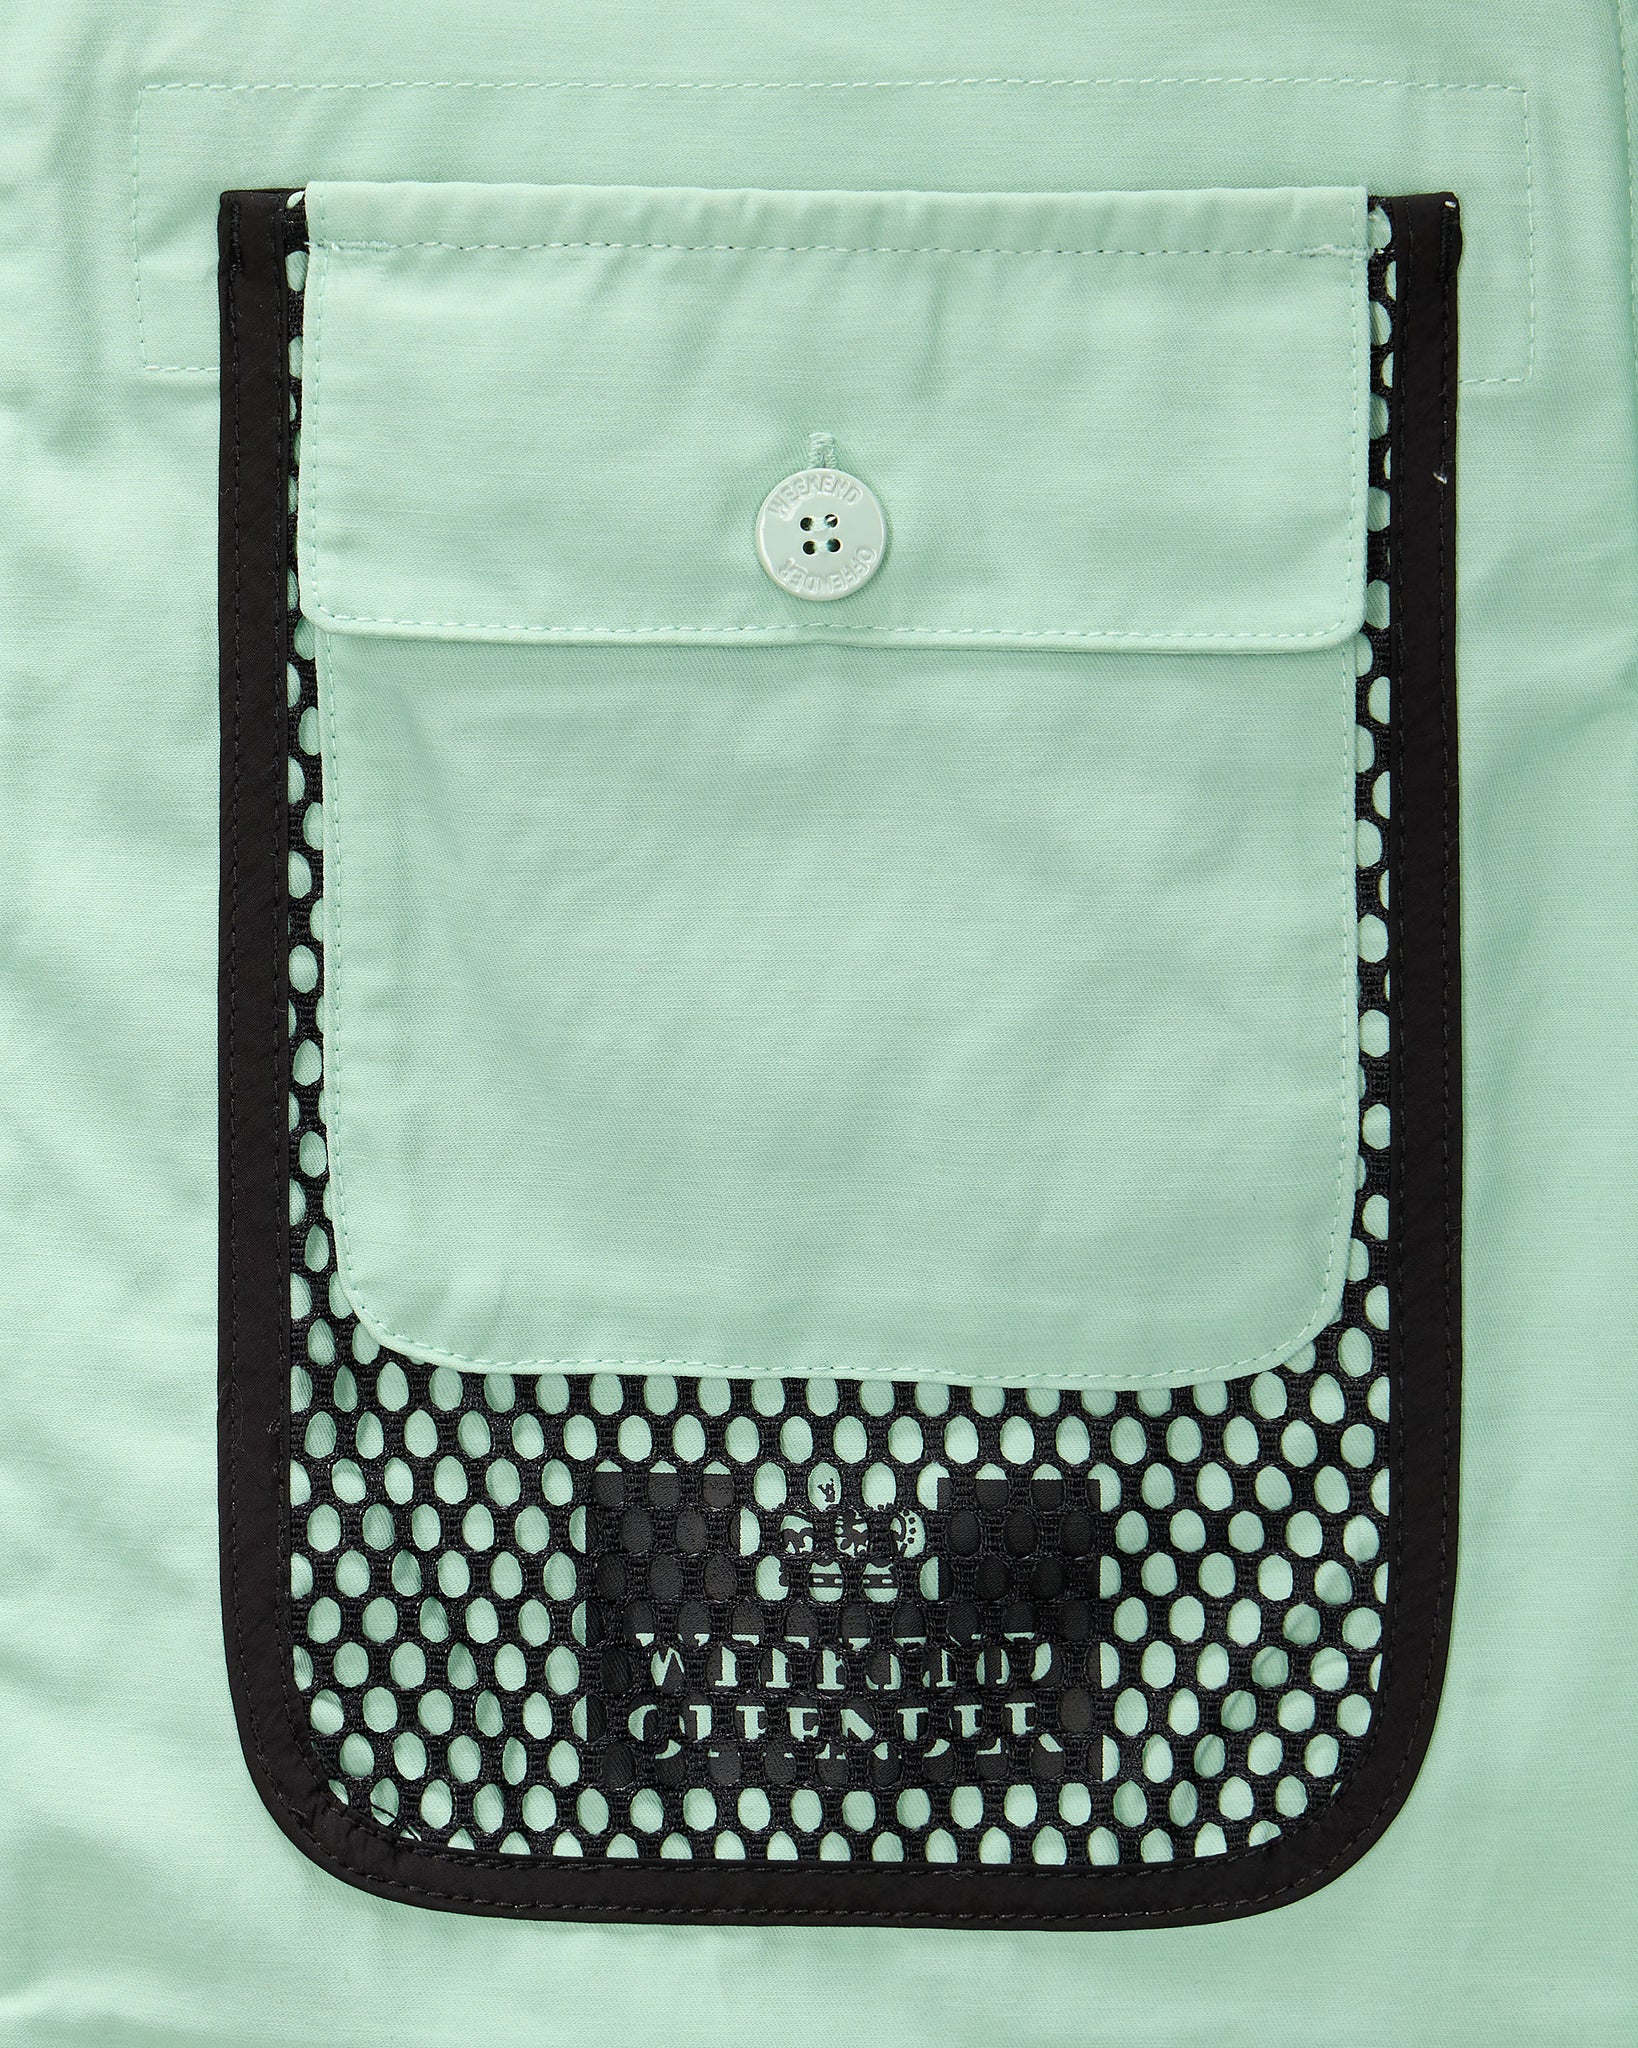 Latmun Mesh Pocket Over-Shirt Mint Tea Green